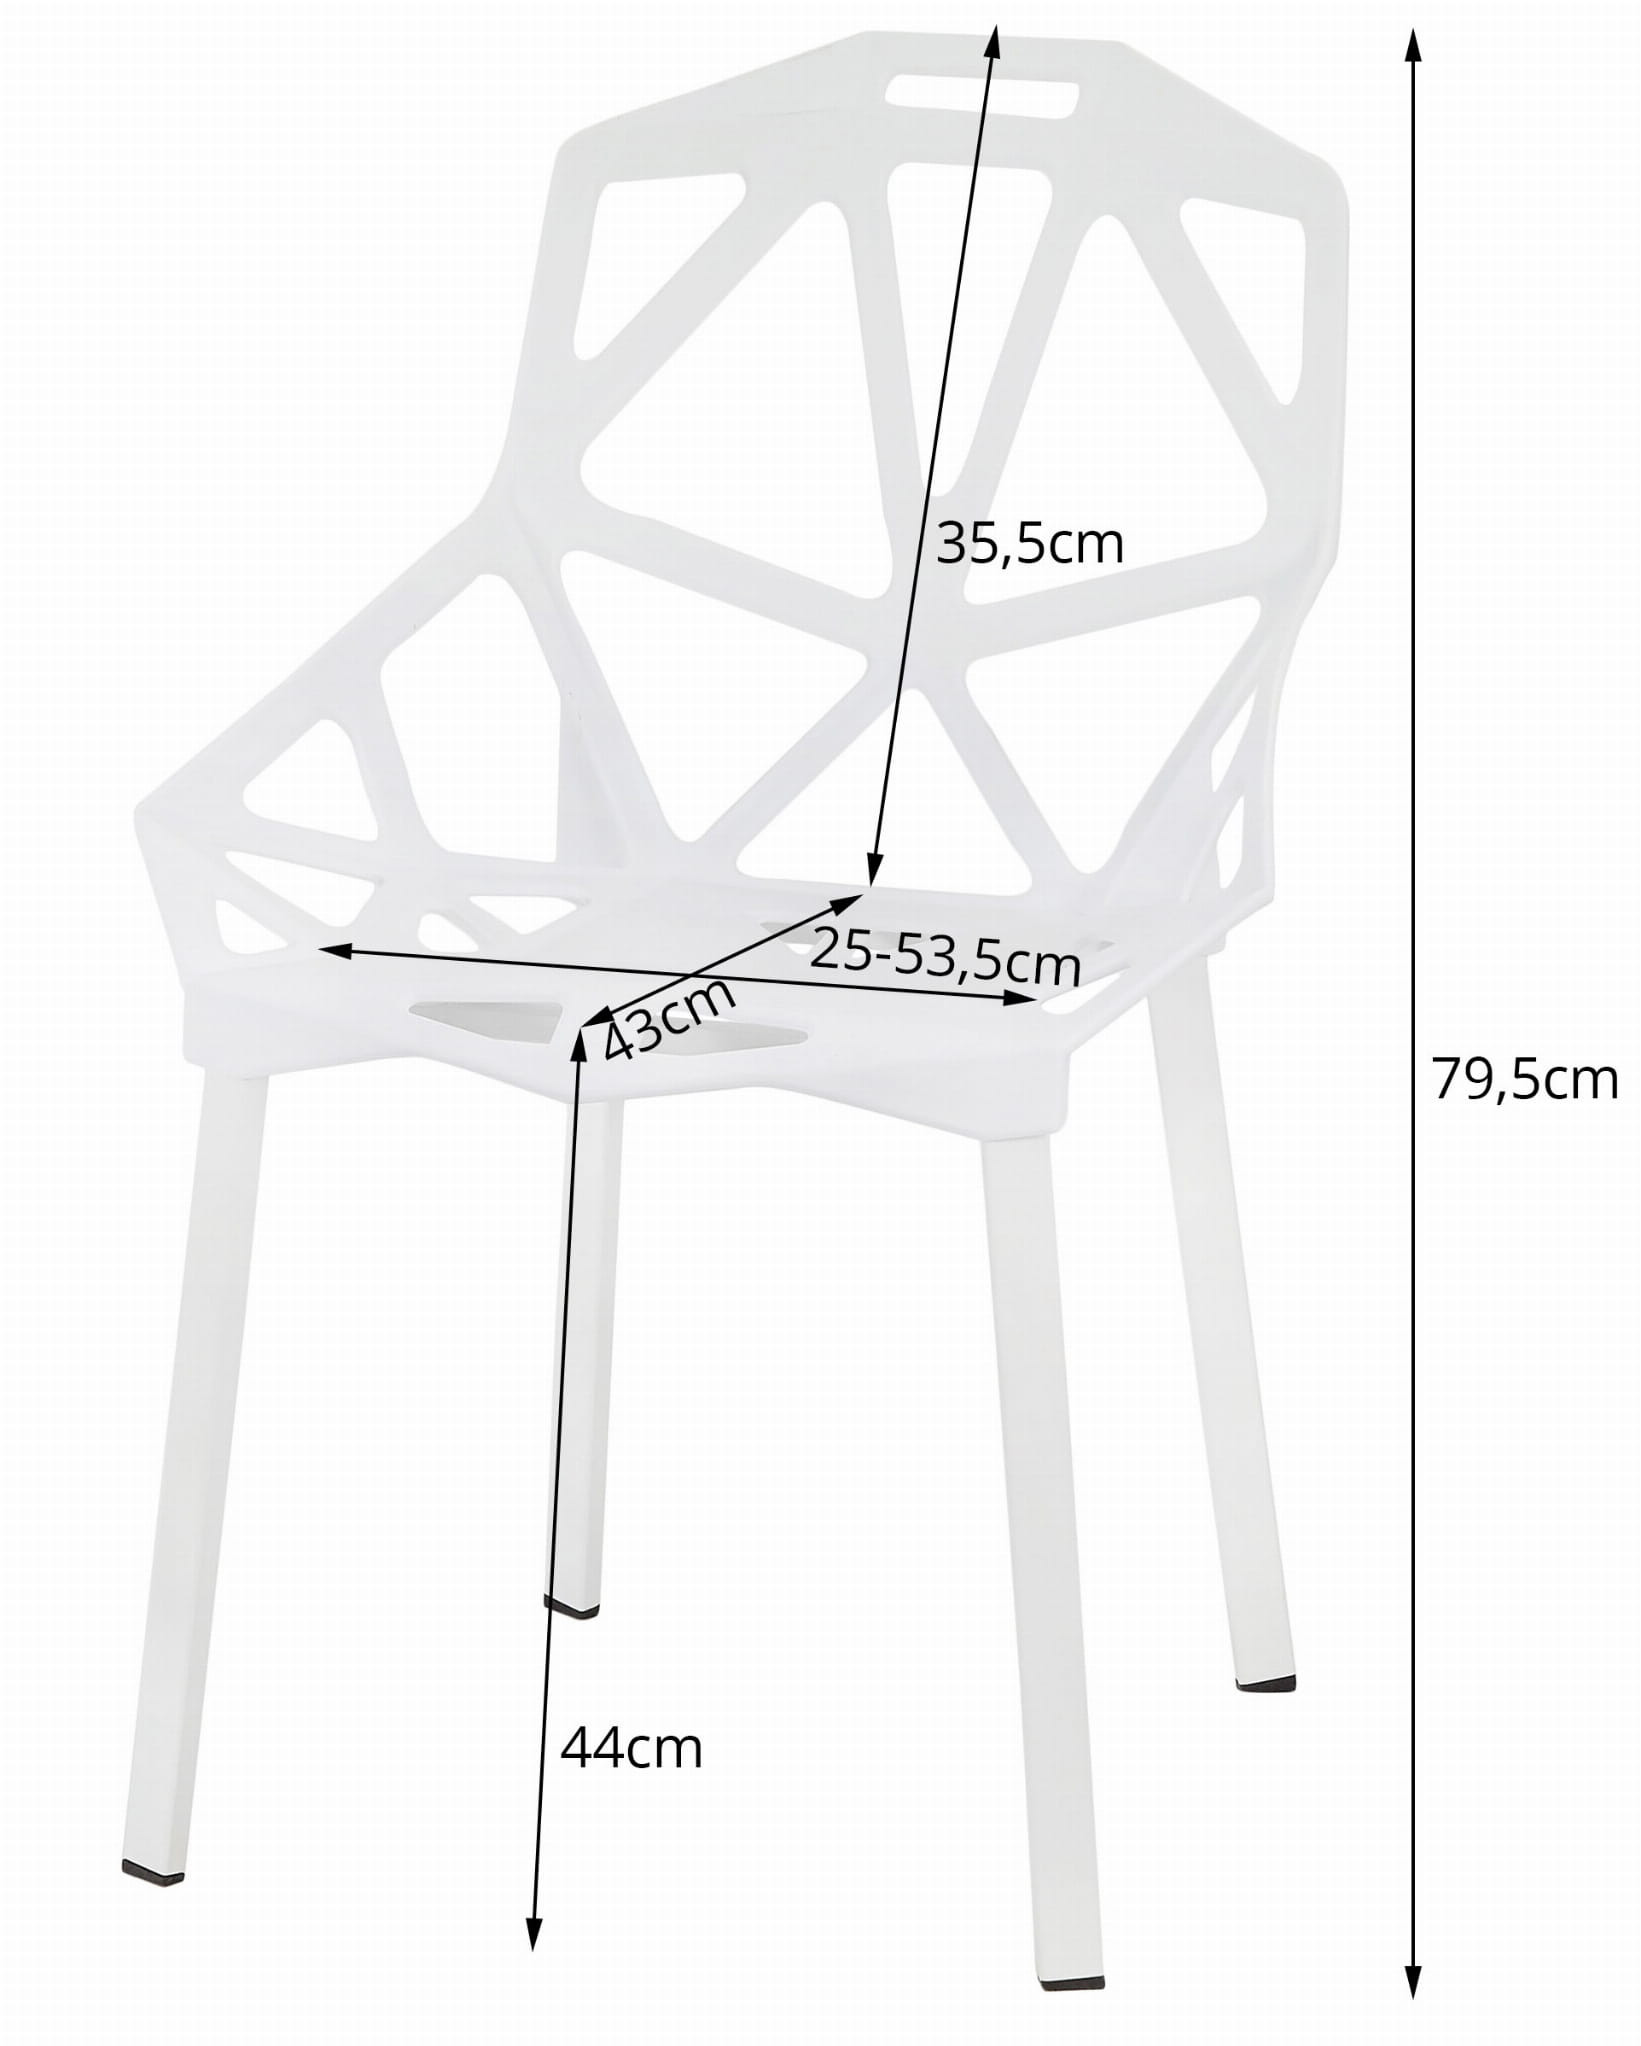 Set dvou židlí ESSEN bílé (2ks)